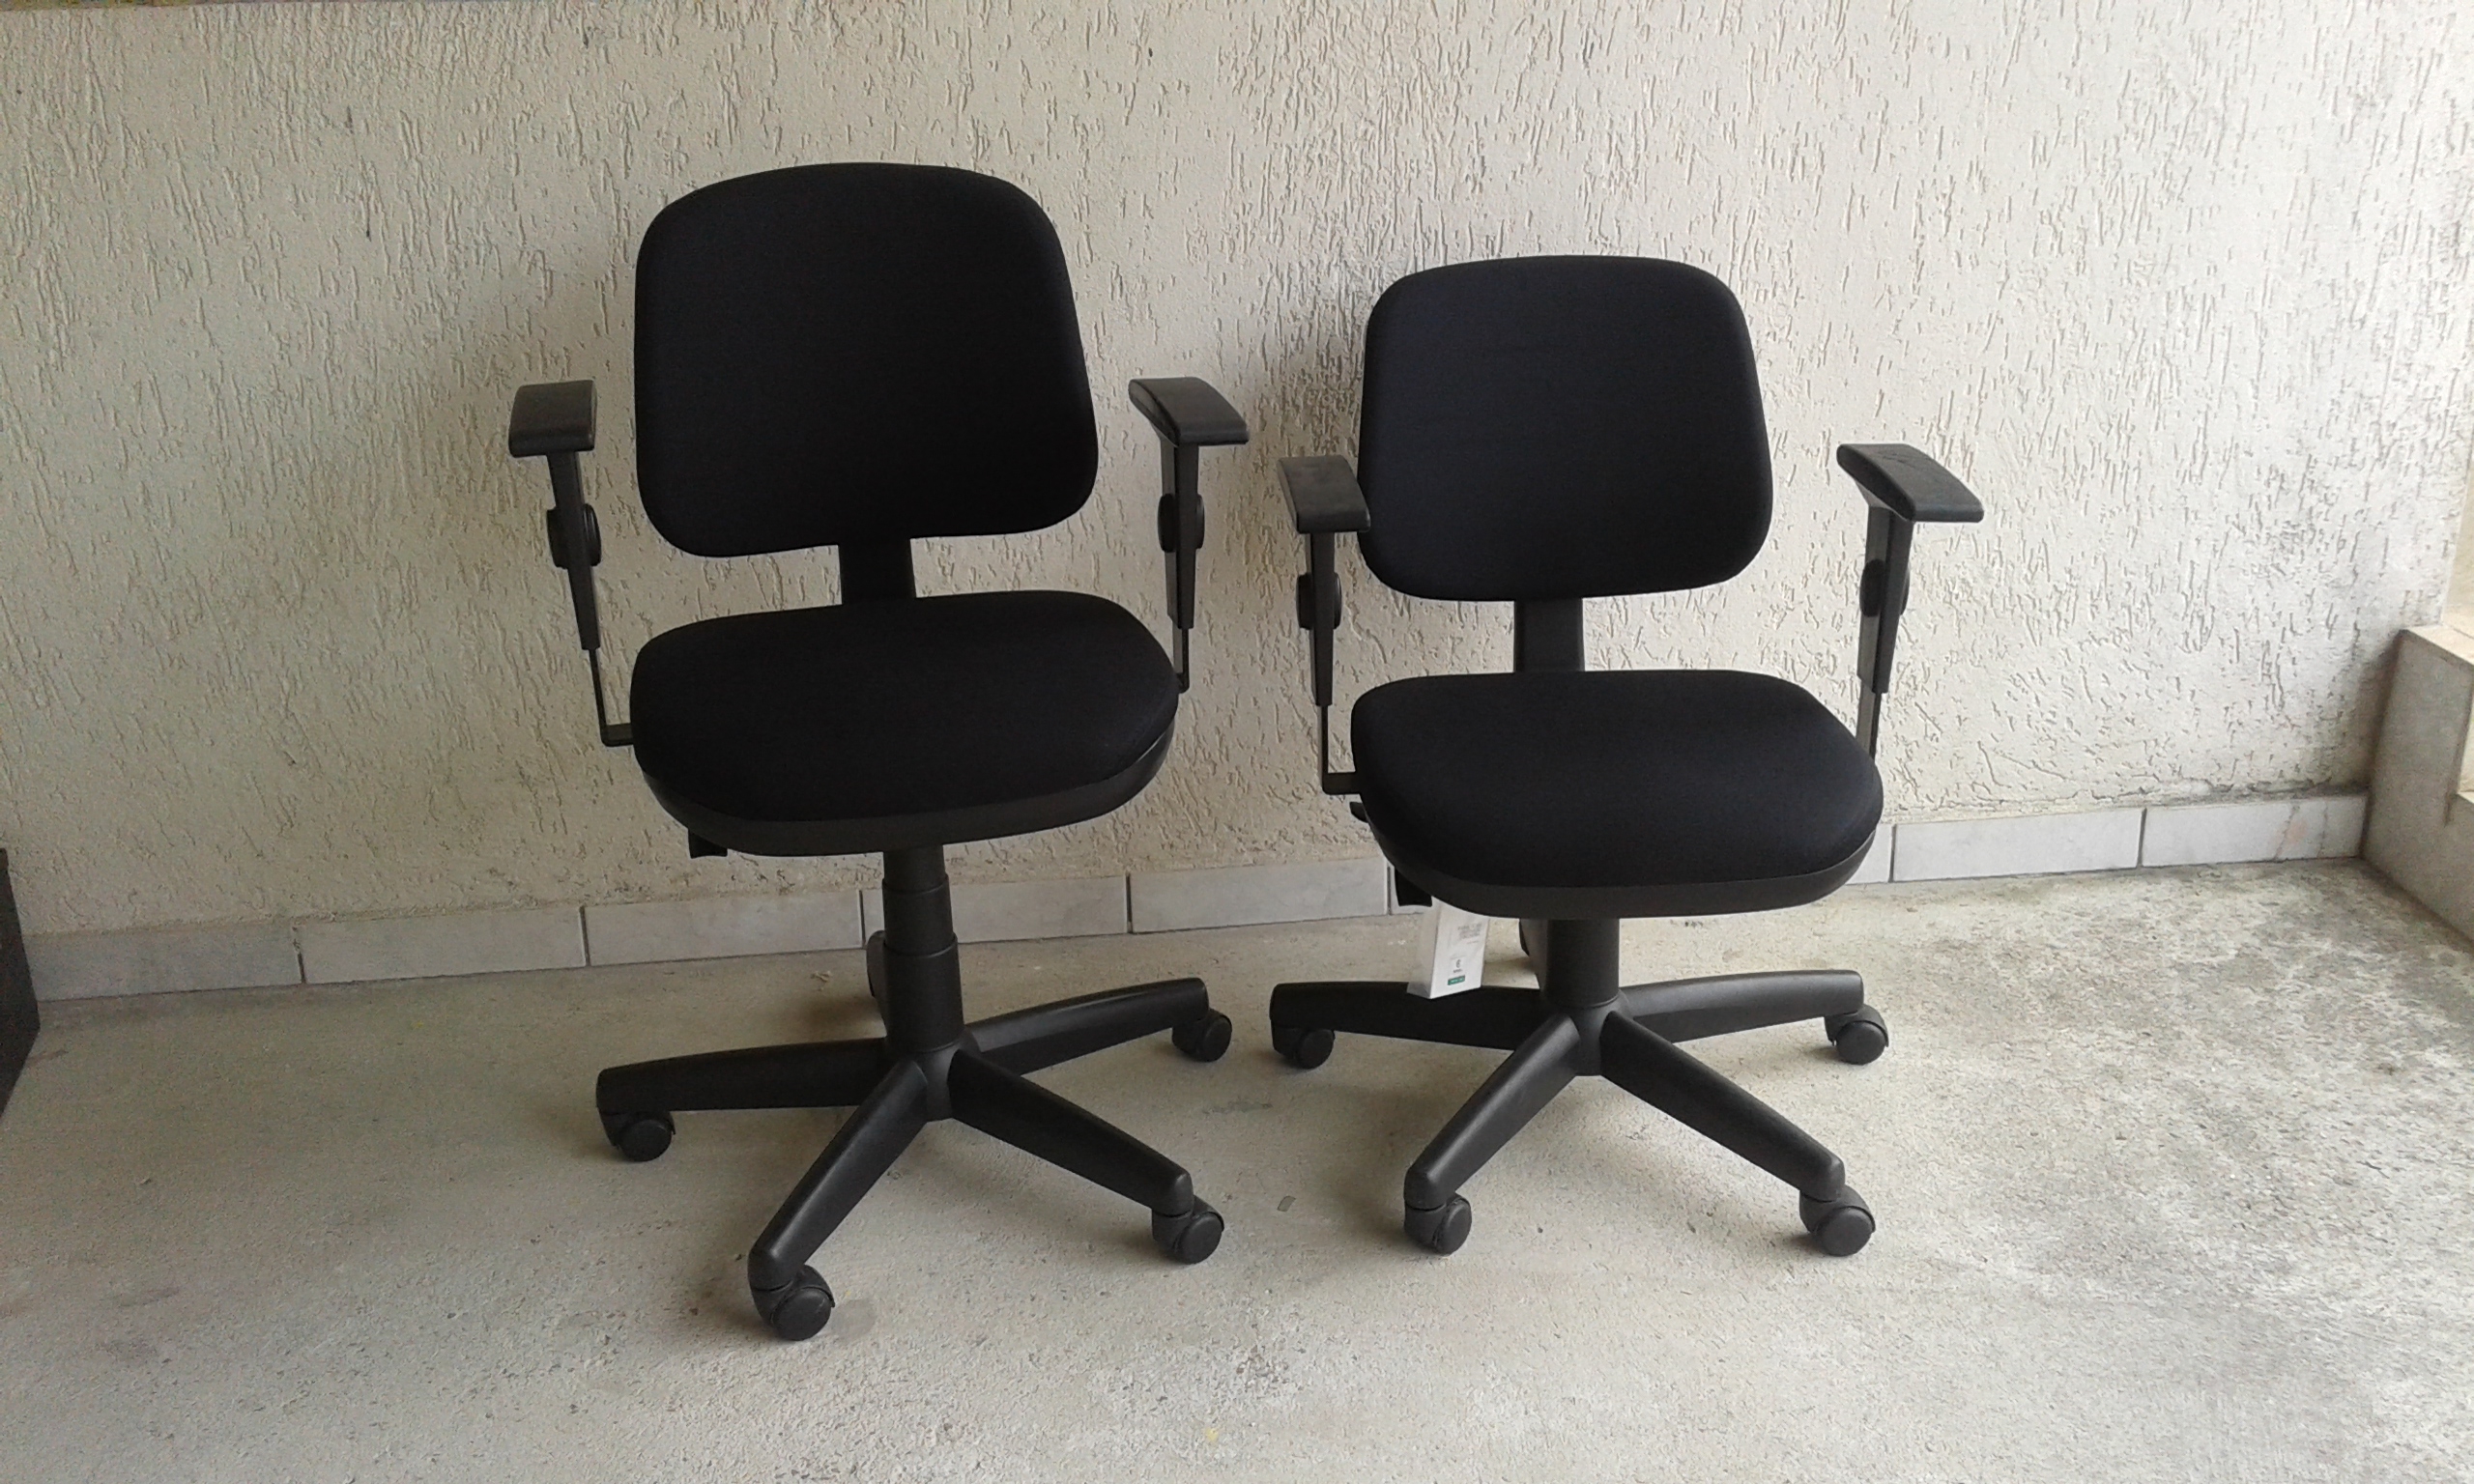 Cadeiras para escritório